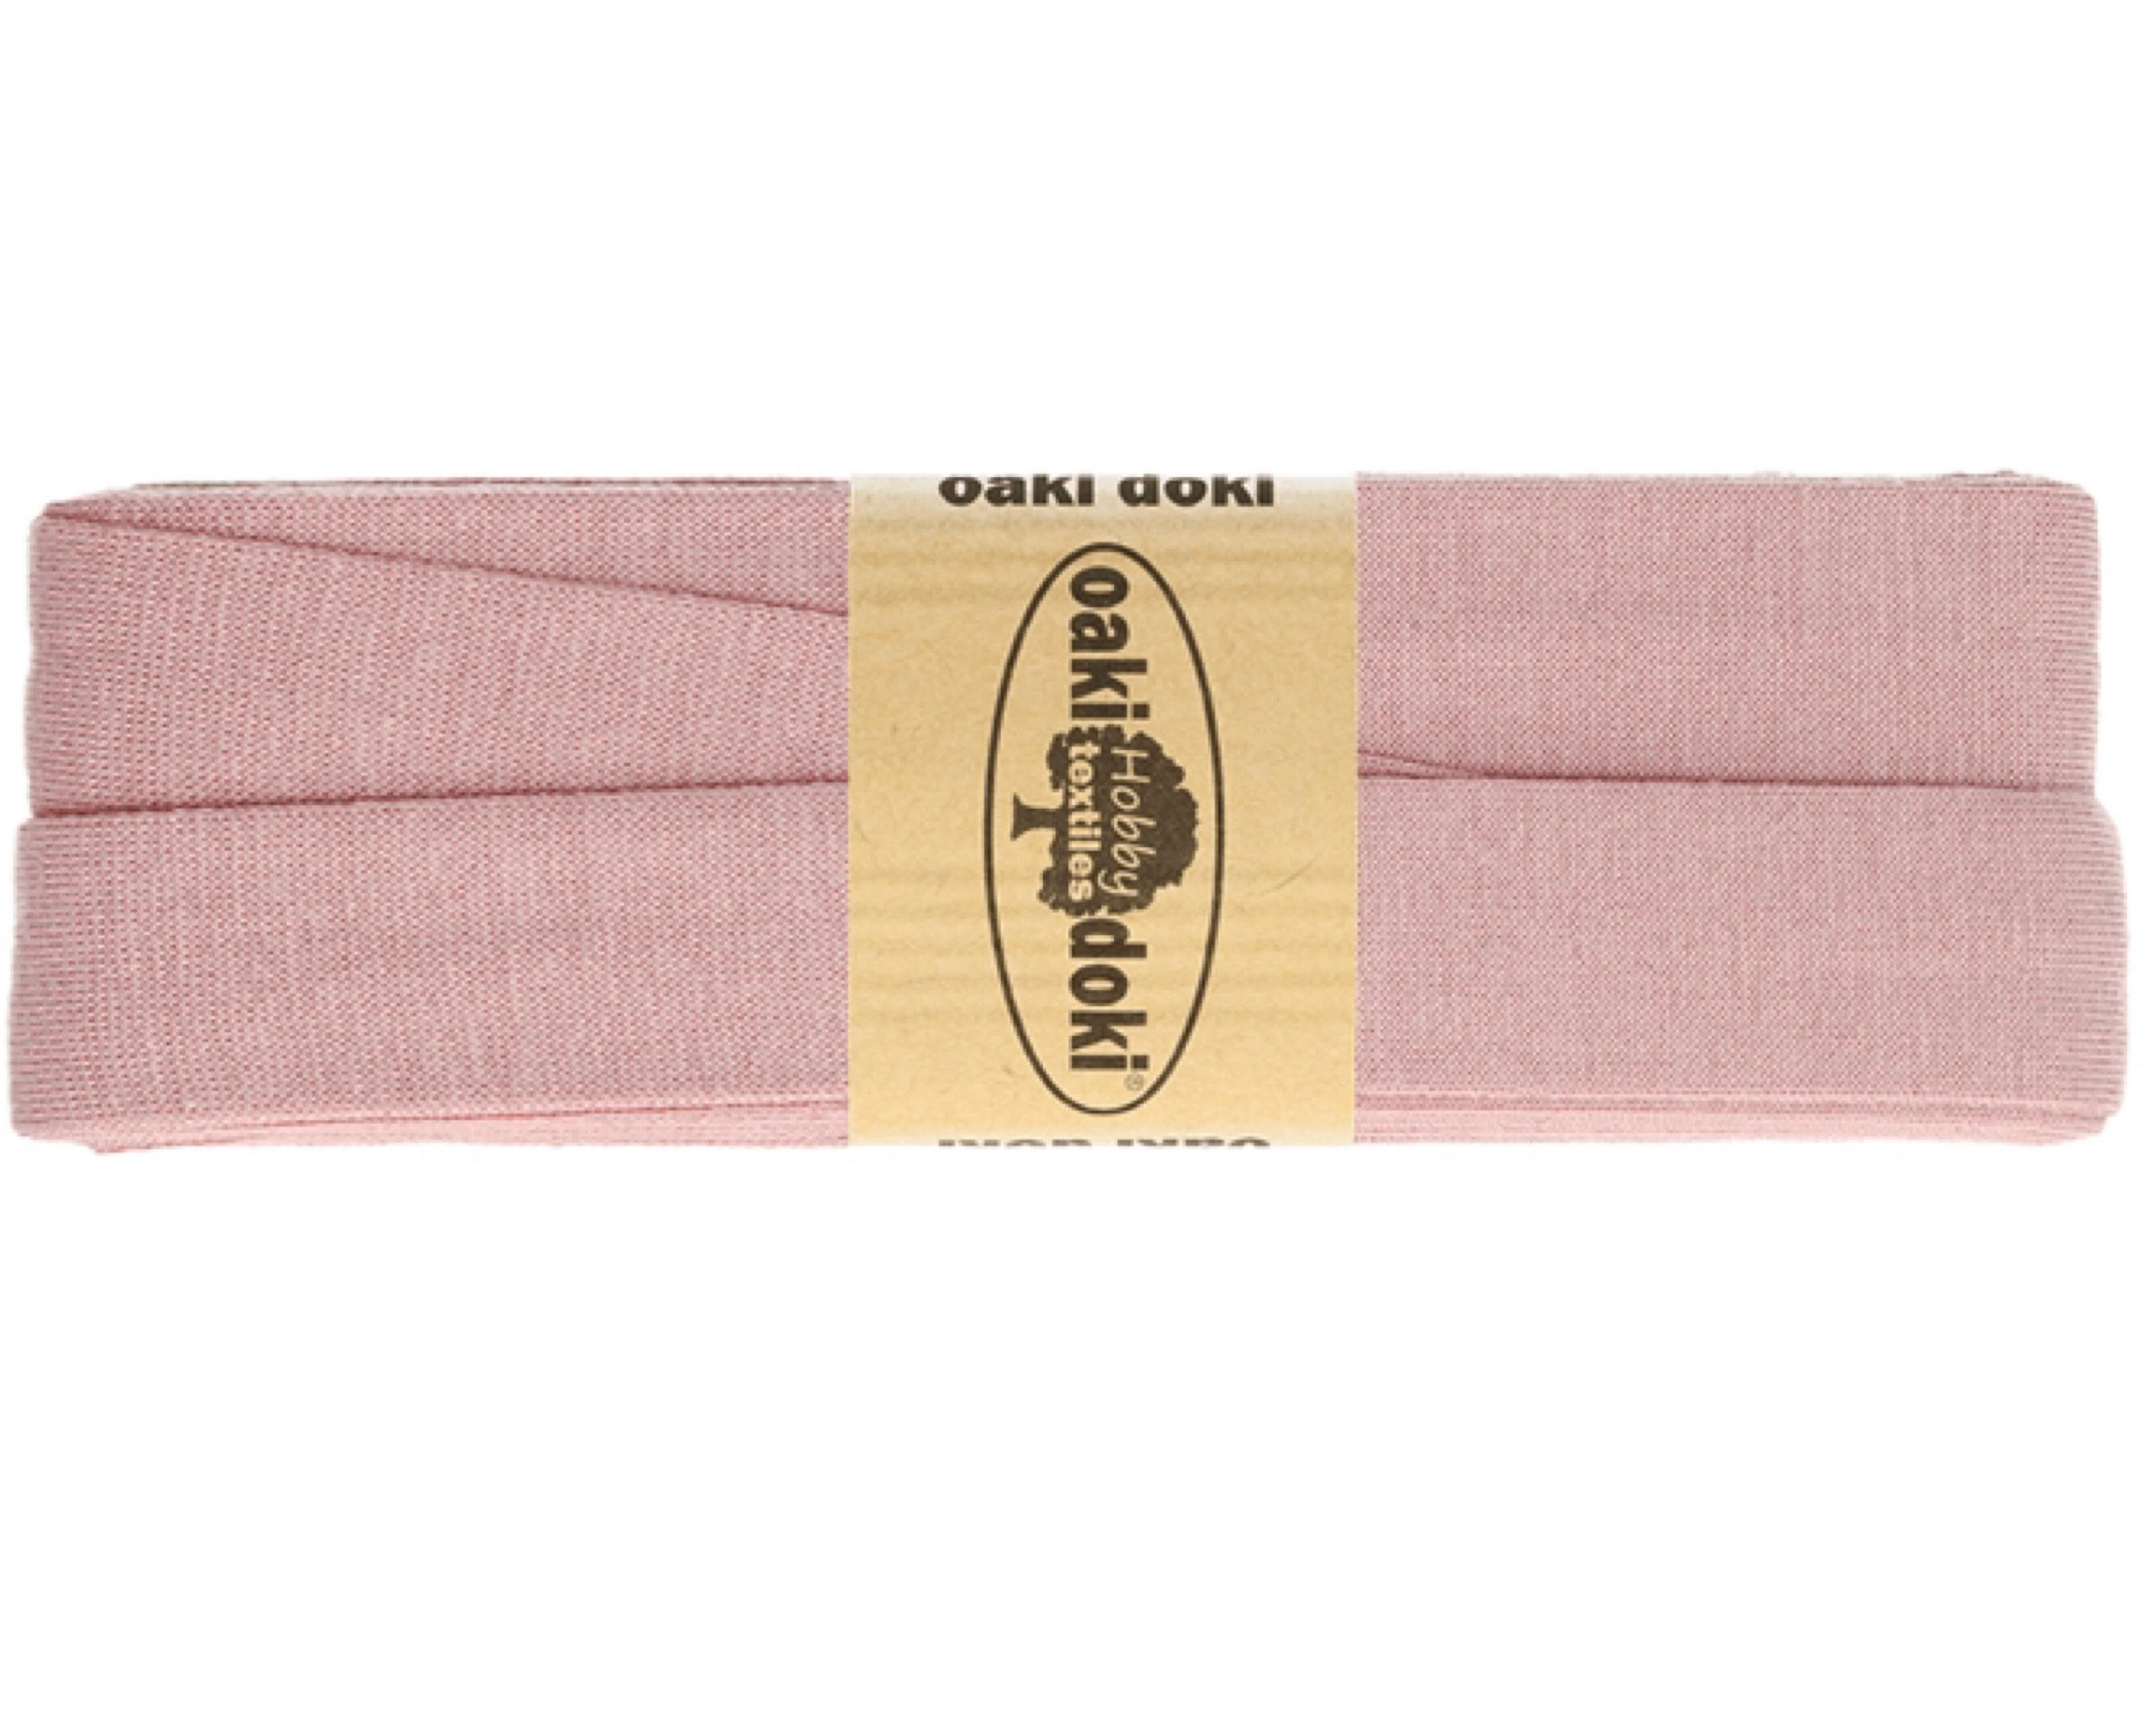 Biaisband tricot de luxe 20 mm 3m – Nr.013 oudroze